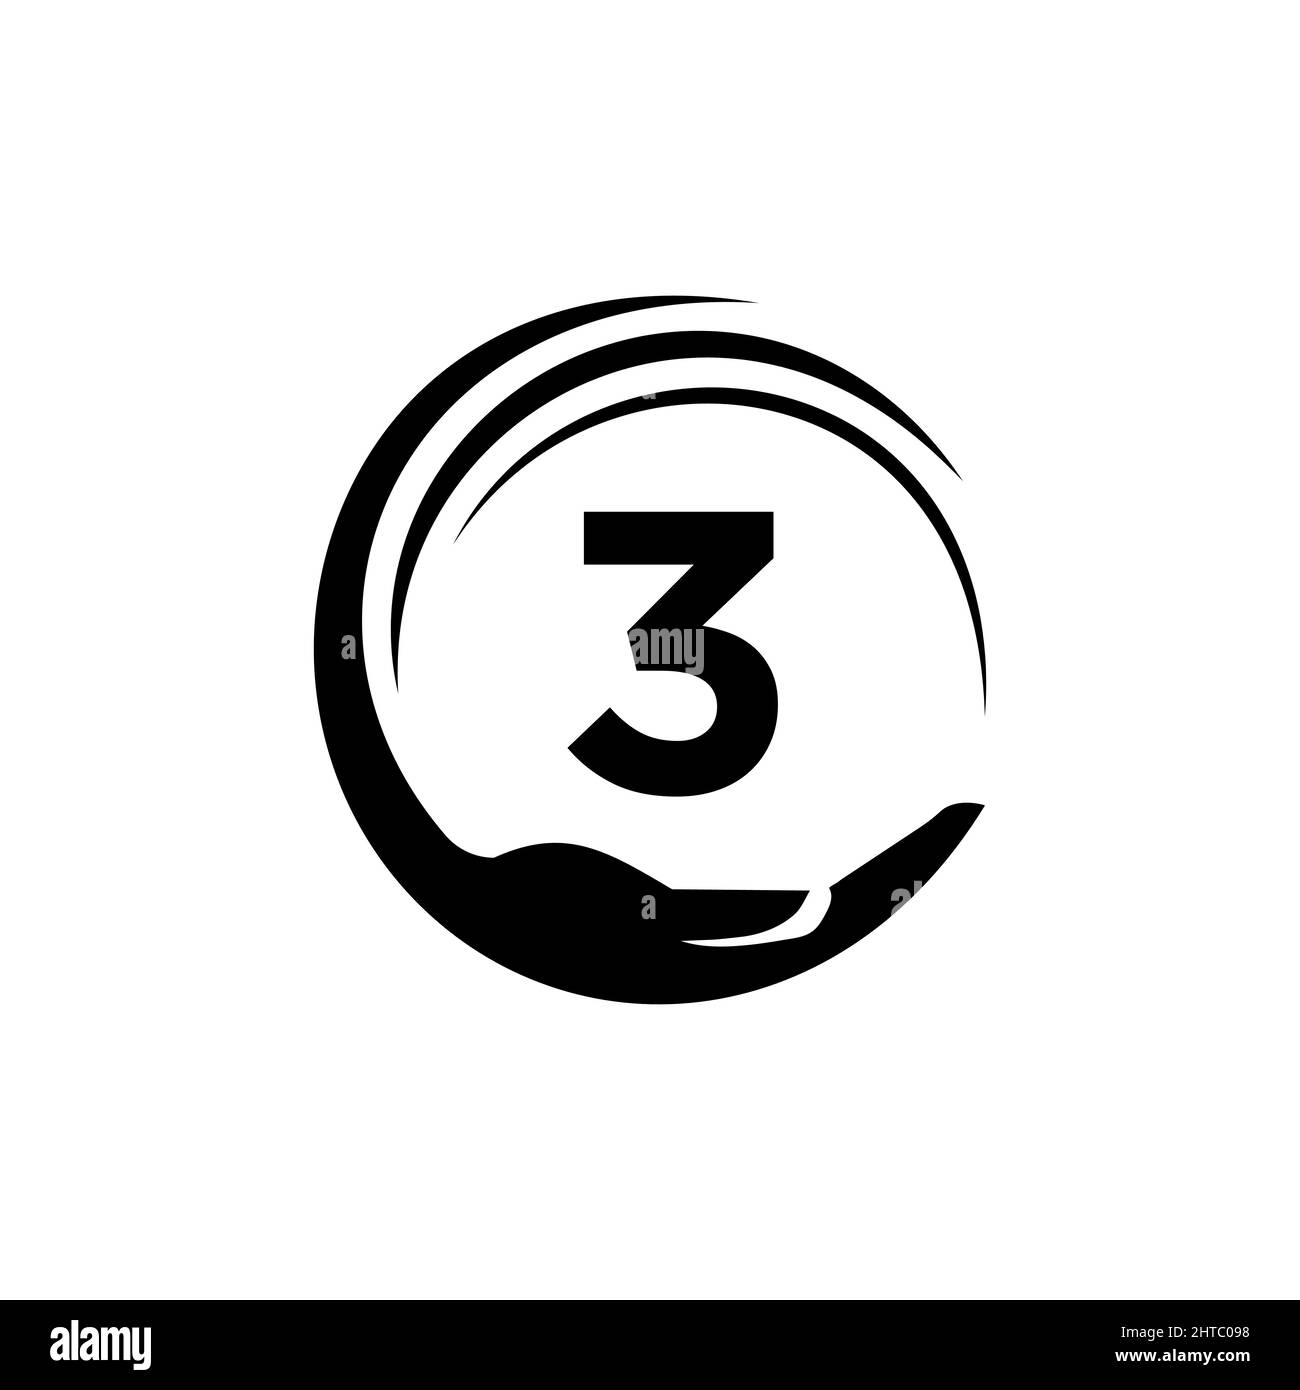 Vorlage Für Charity-Logo Auf Brief 3. Initial Unity Foundation Human Logo Sign. Unity Team Work Logo-Design Mit Vorlage Für 3 Buchstaben Stock Vektor